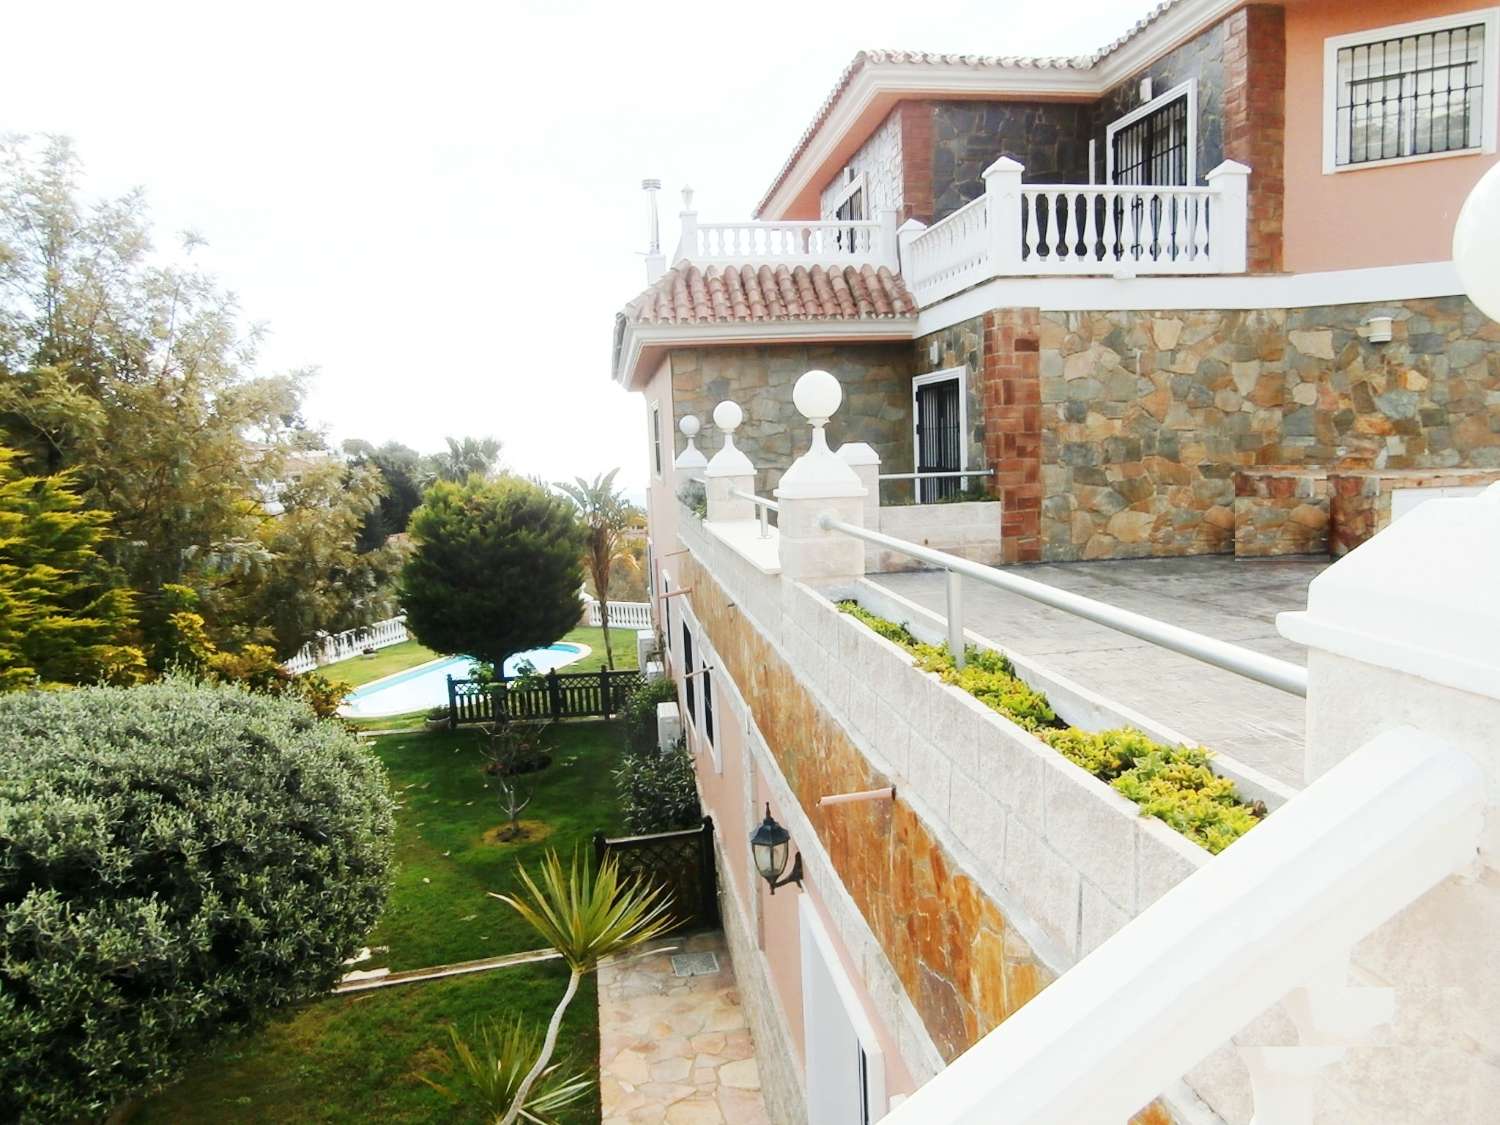 Exclusiva villa independiente con excelentes vistas al mar, situada en una de las mejores zonas residenciales de Benalmadena, La Capellania.